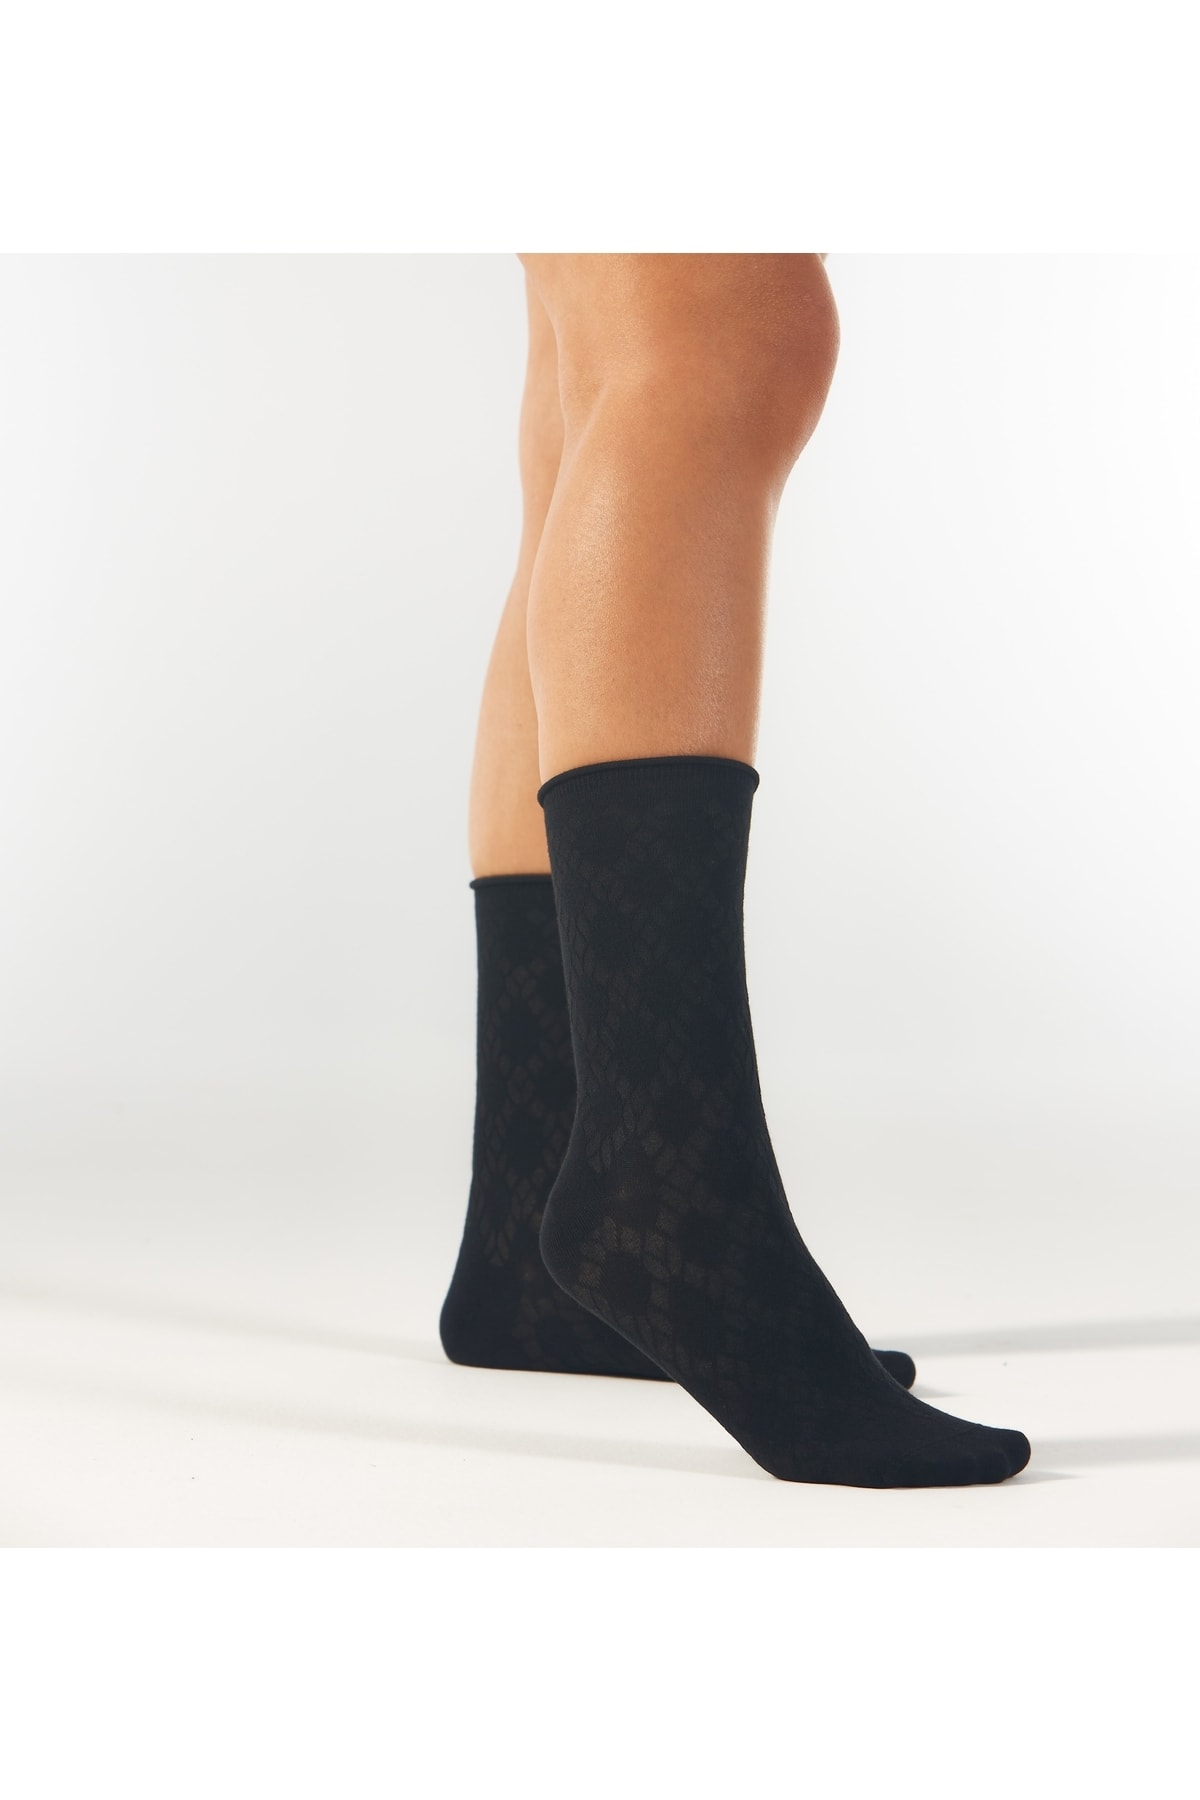 Forwena Siyah Örgü Desenli Modal Lastiksiz Dikişsiz Kadın Soket Çorap